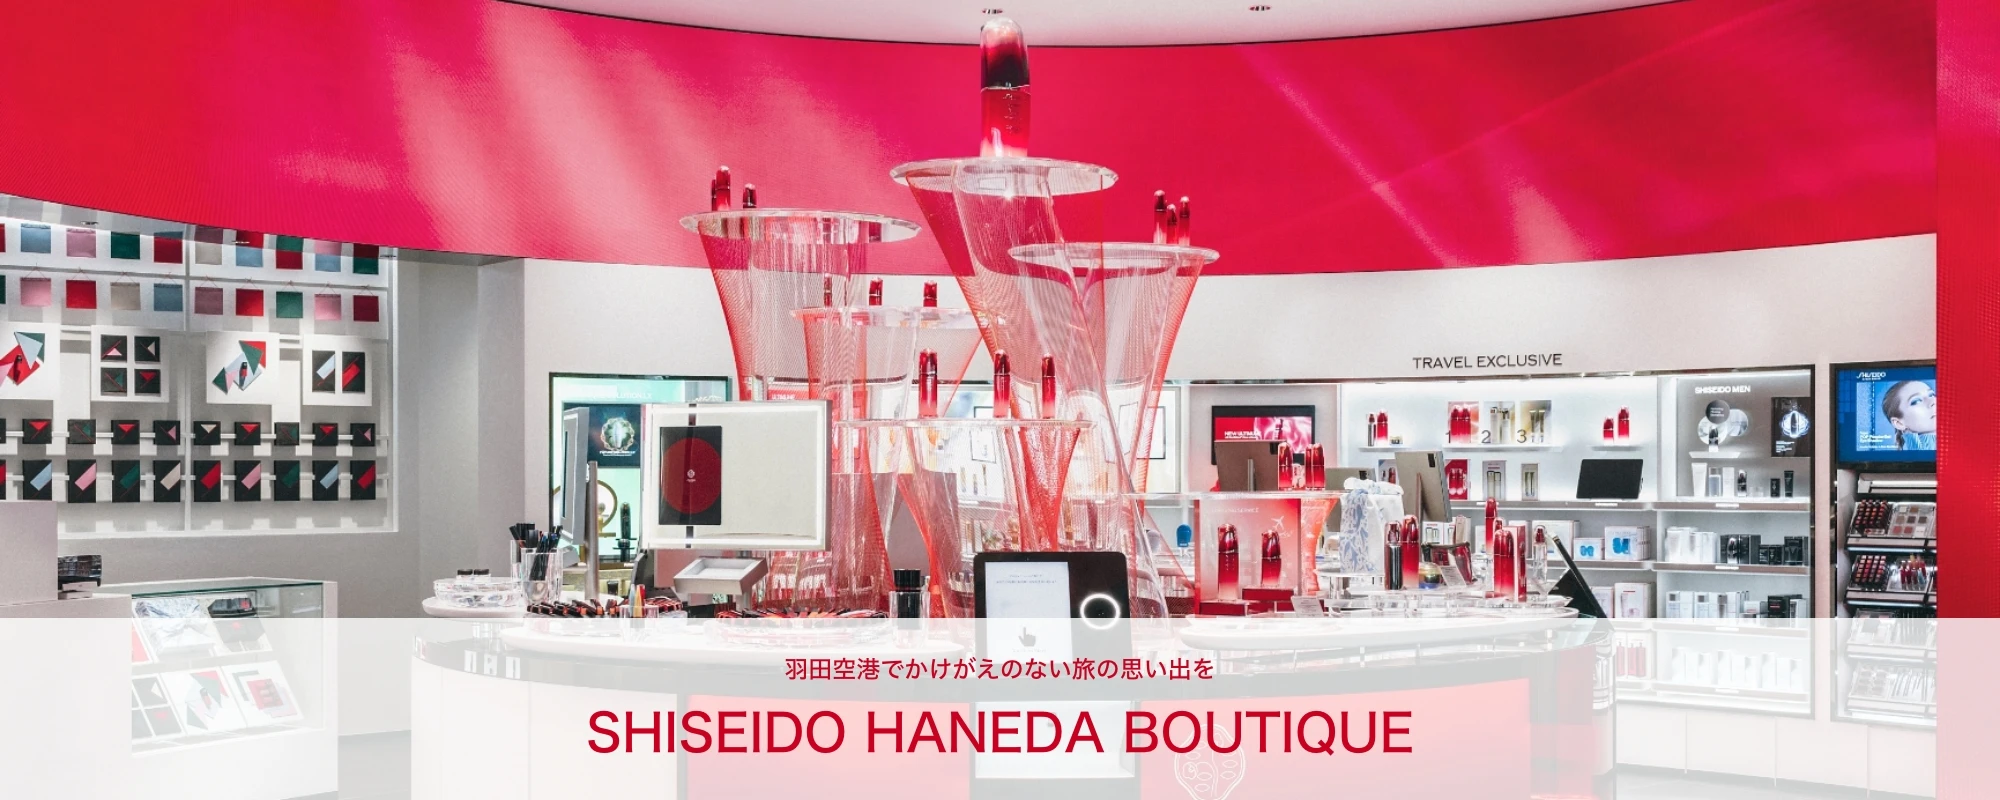 [羽田空港でかけがえのない旅の思い出を] SHISEIDO HANEDA BOUTIQUE